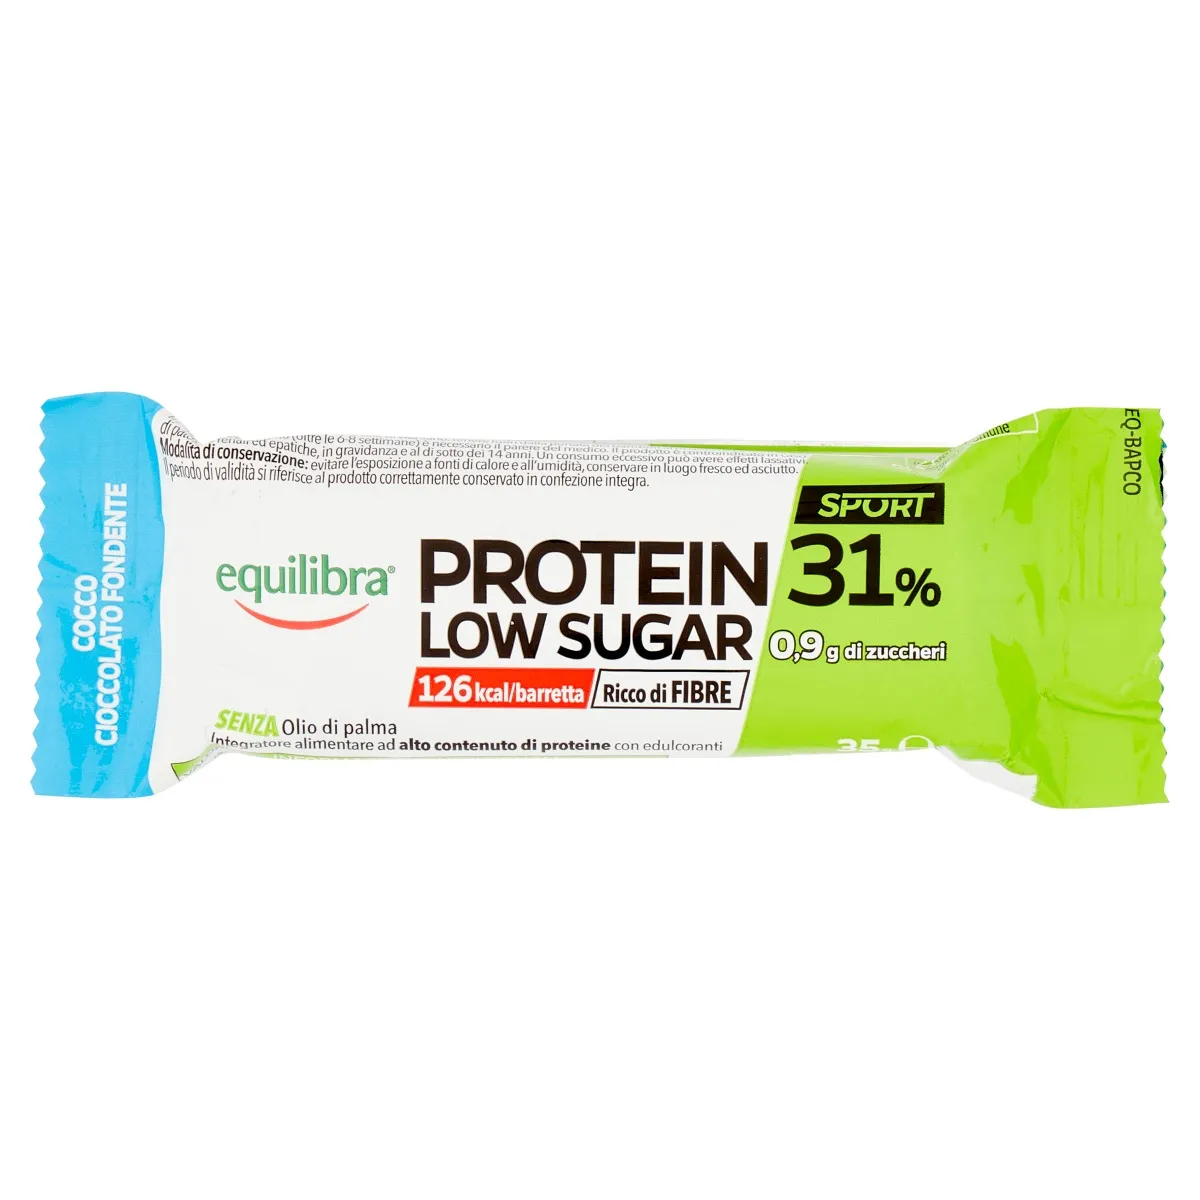 Equilibra Protein 31% Barretta Cocco